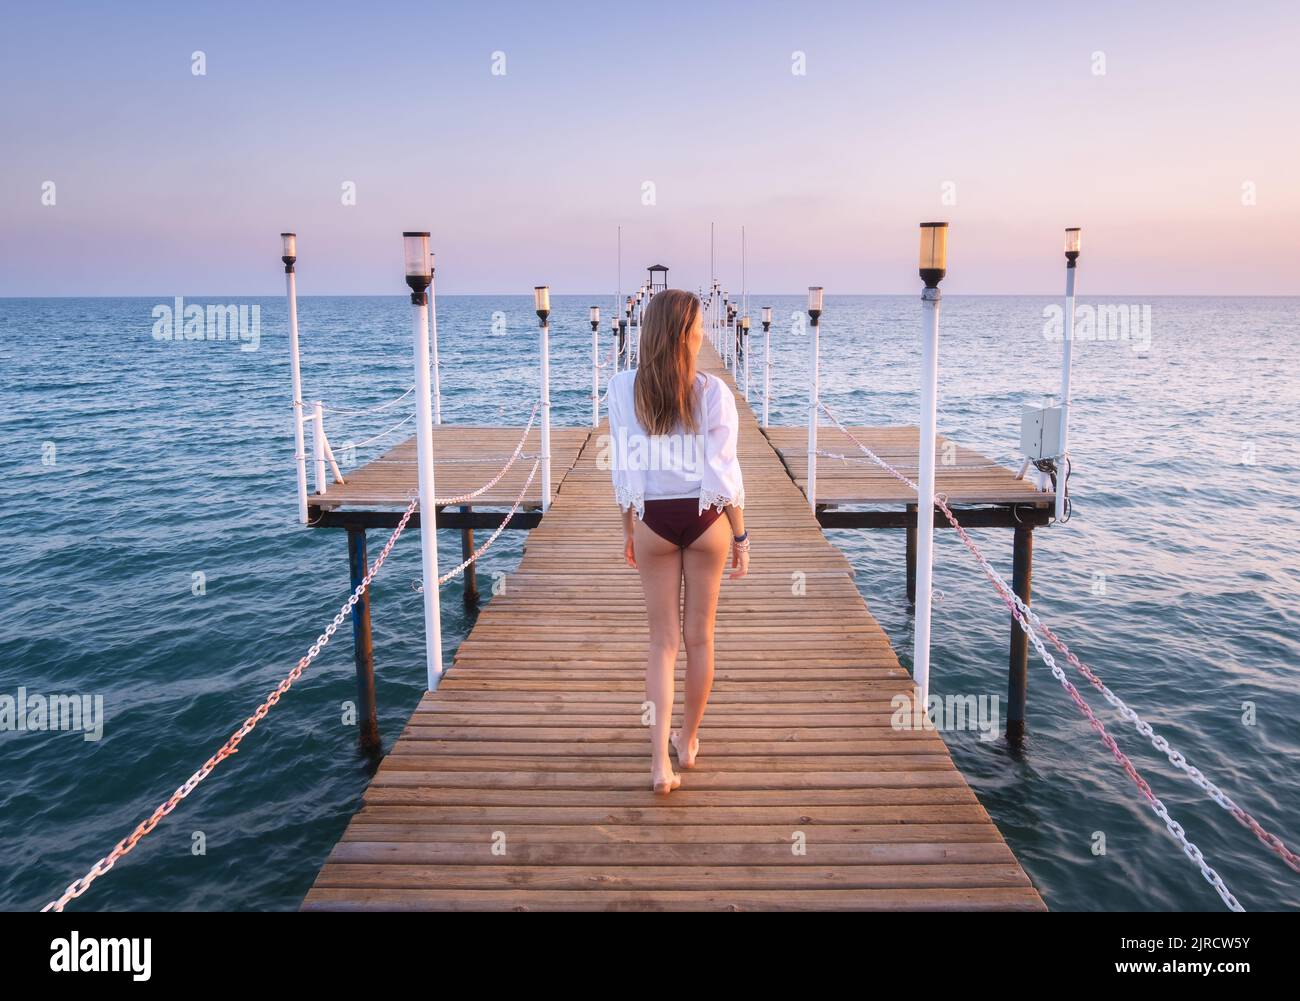 Glückliche junge Frau im Bikini, die auf dem hölzernen Pier am Meer läuft Stockfoto